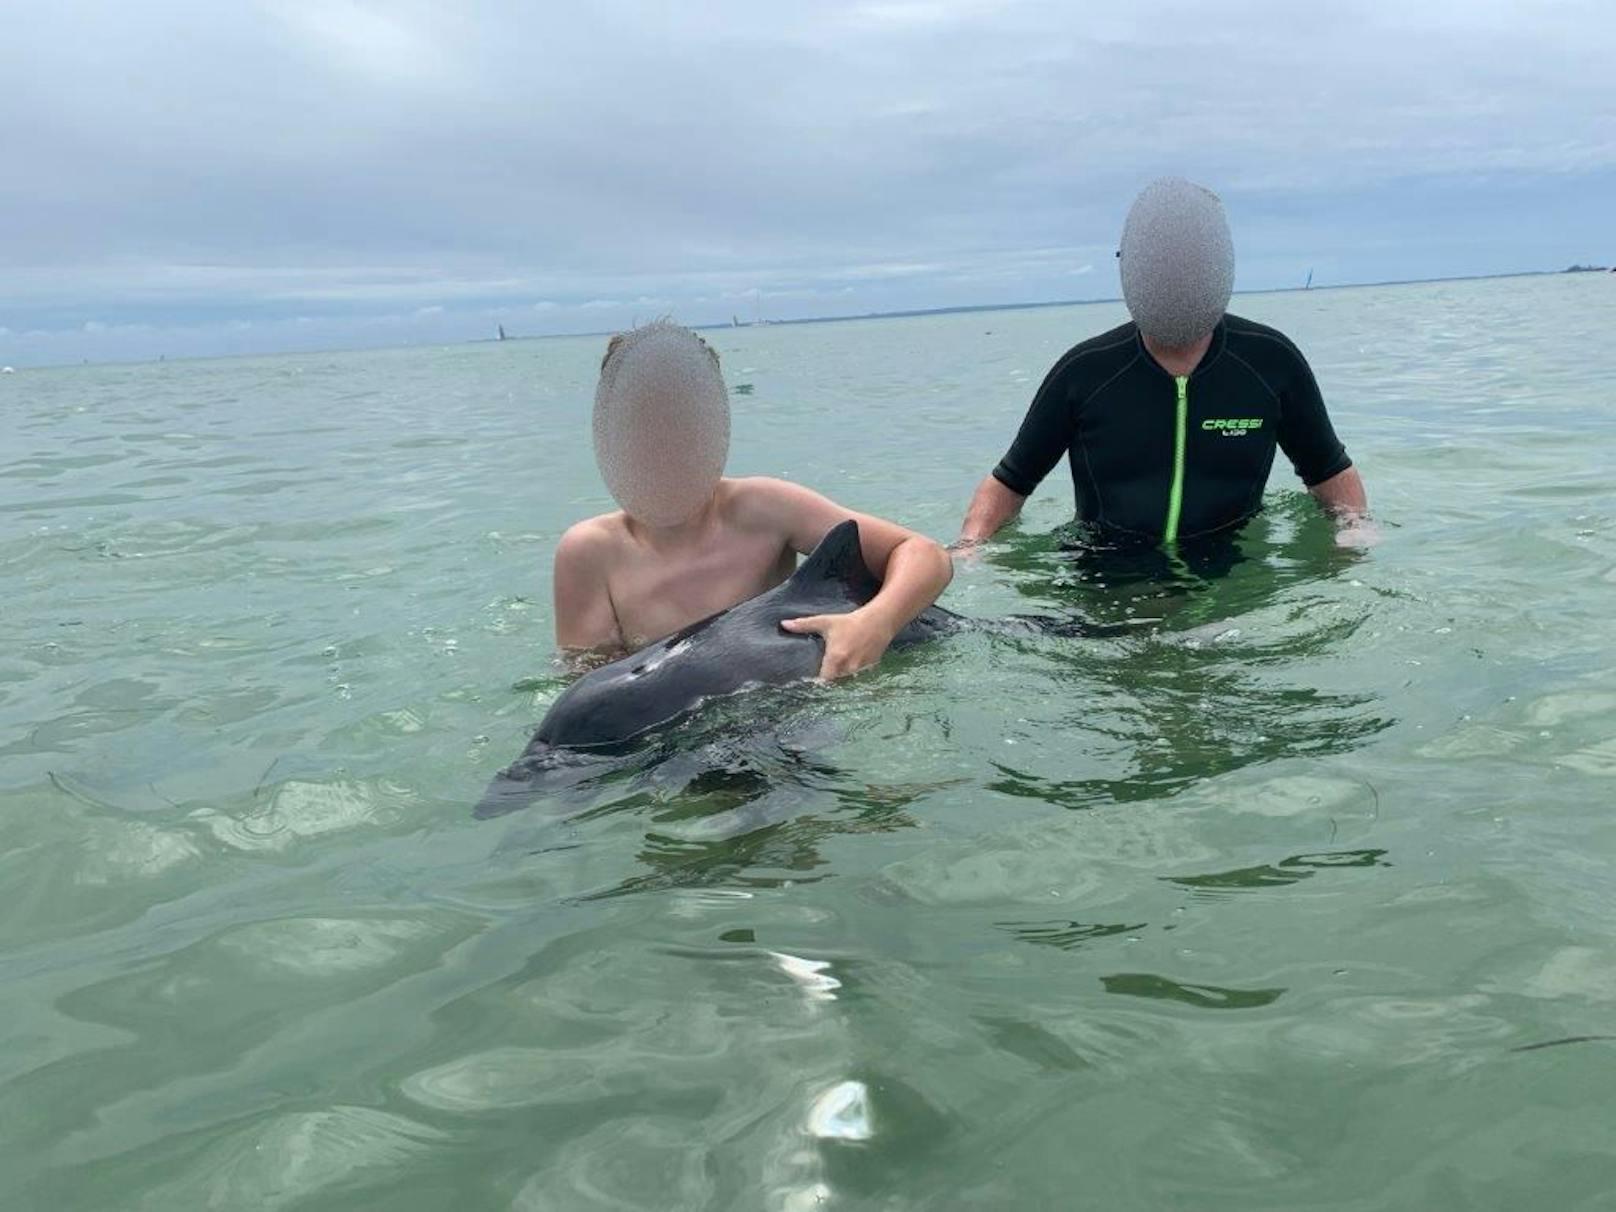 Kinder streicheln kleinen Schweinswal in der Ostsee tot